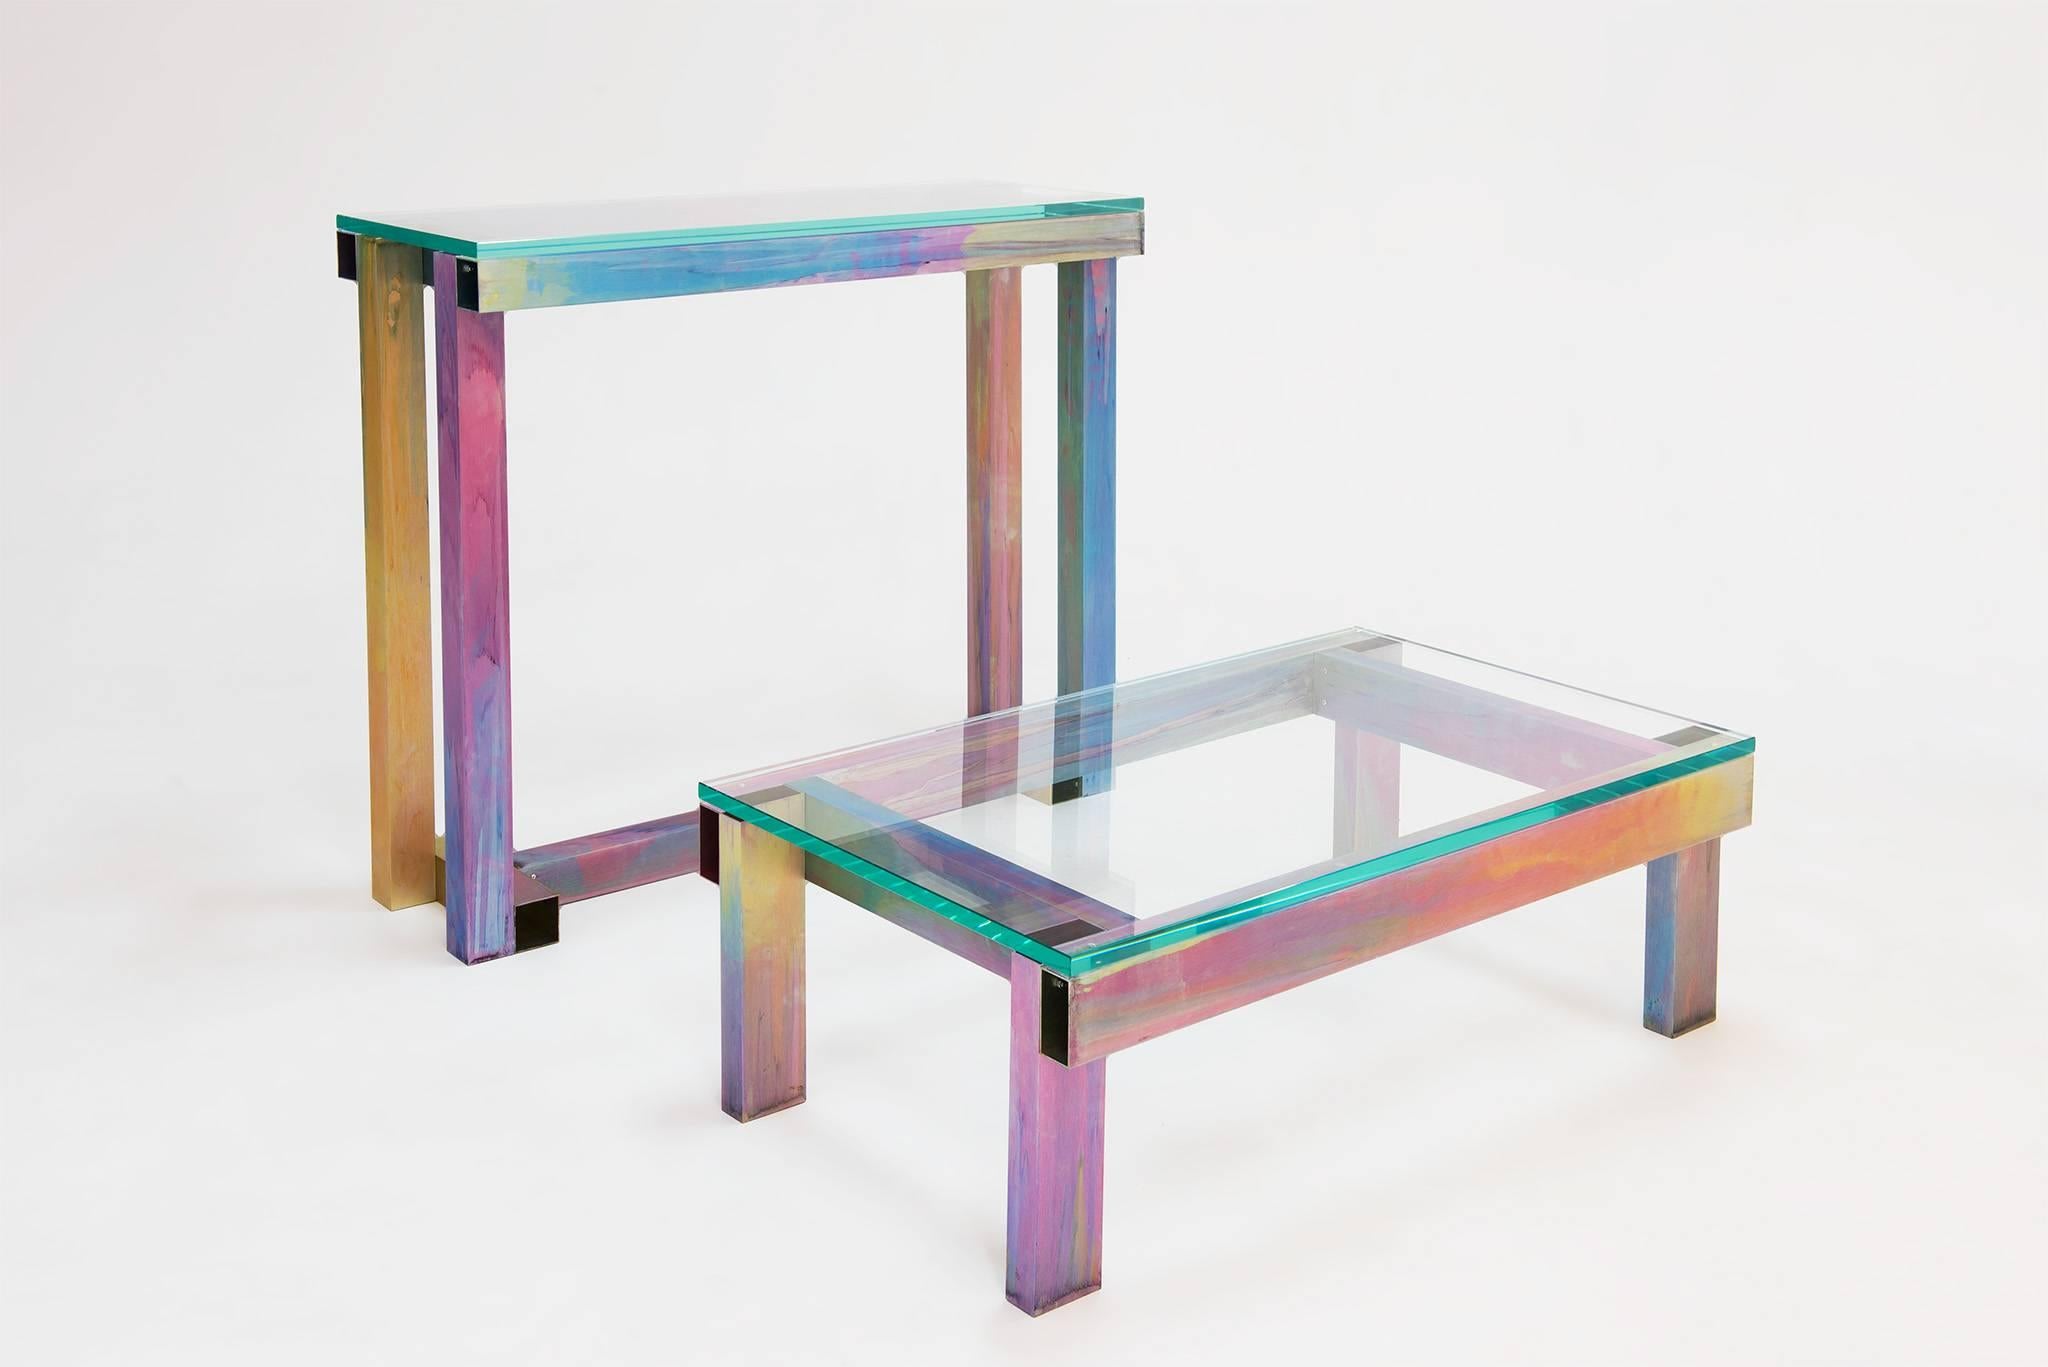 La table basse de Fredrik Paulsen, commandée par Etage Projects pour le Salon Art and Design New York 2017, braque les projecteurs sur une technique toute nouvelle et unique qui combine l'aluminium anodisé avec sa signature, le rainbow tie-dye que